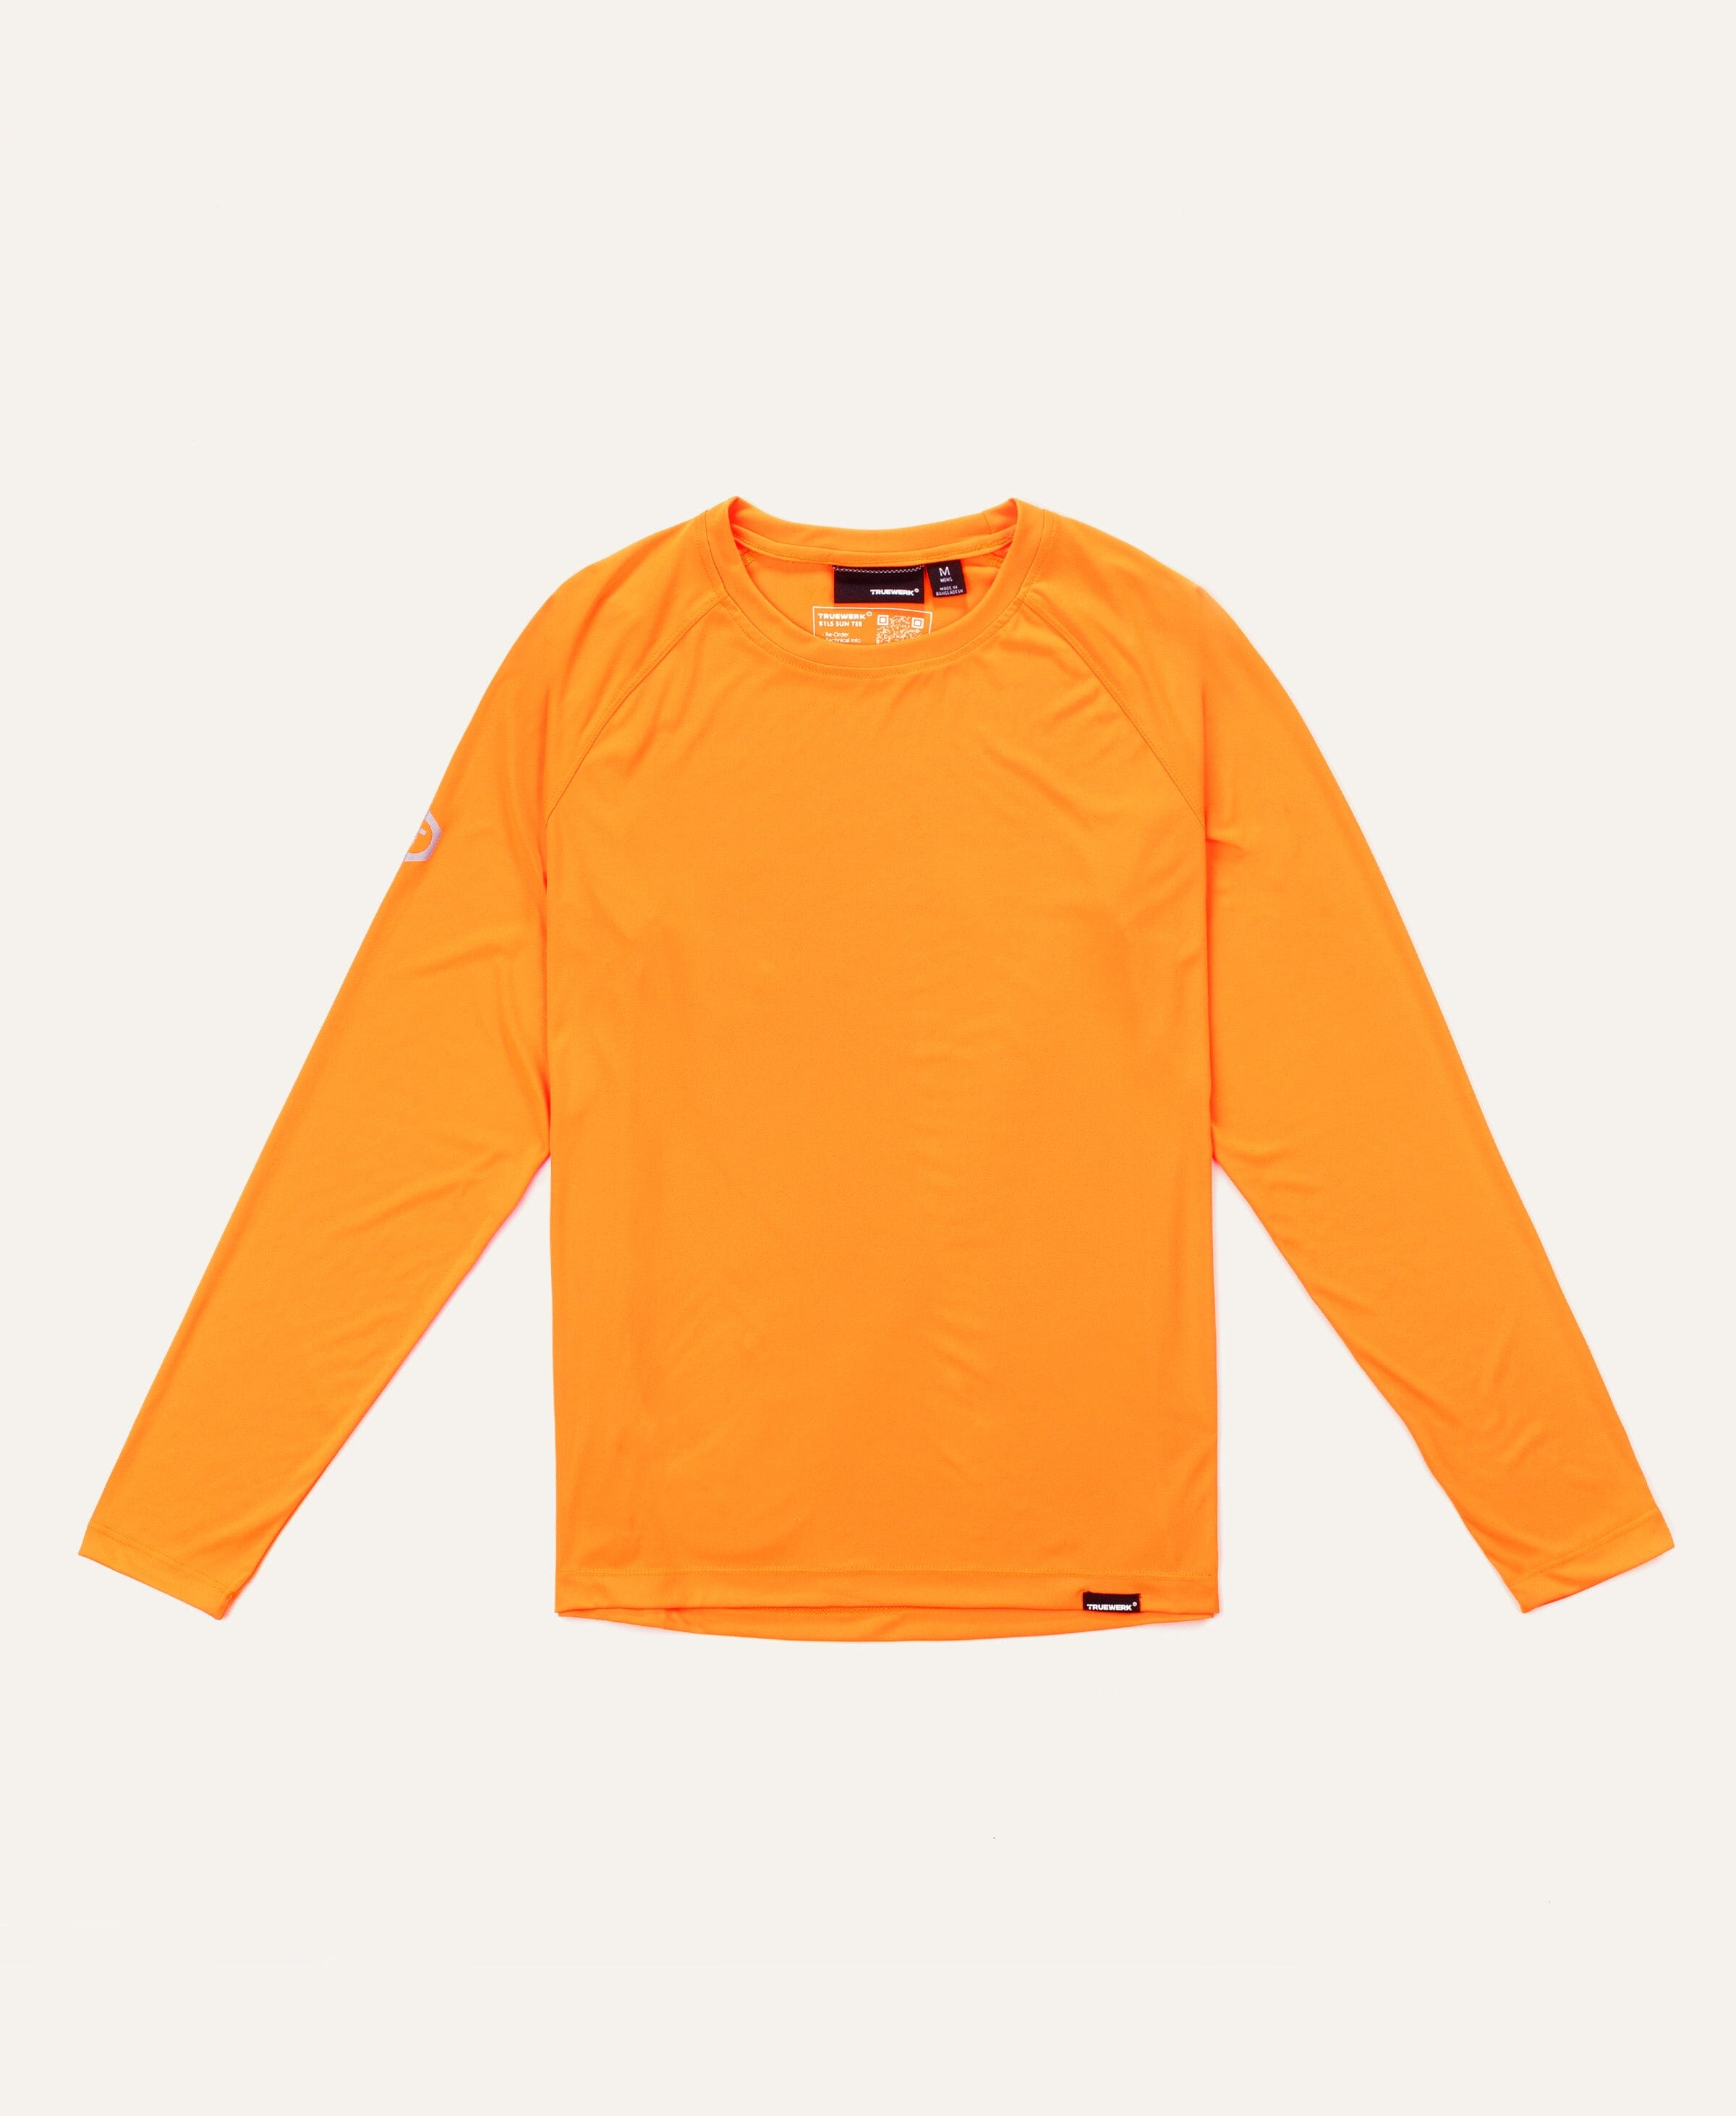 B1 Sun Tee LS - Men's Fit Truewerk #color_viz orange